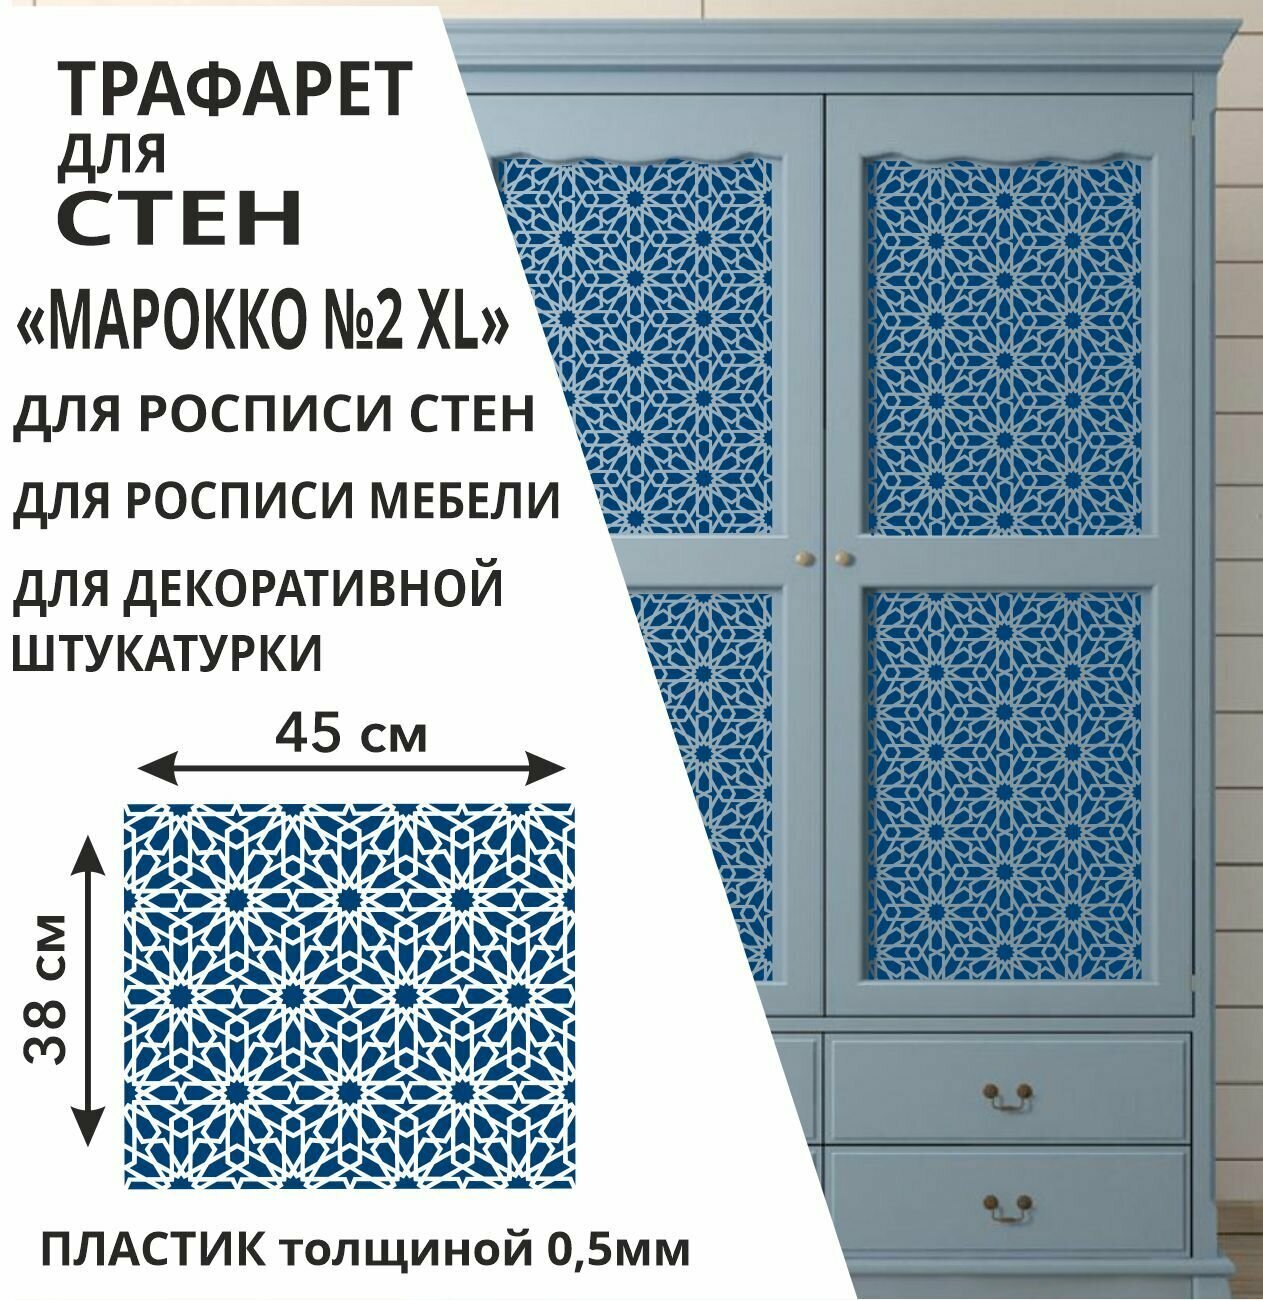 Трафарет "Марокко № 2 XL" 48х42 см - для творчества и декора стен, мебели, плитки и штукатурки. Многоразовый, пластик 0,5 мм